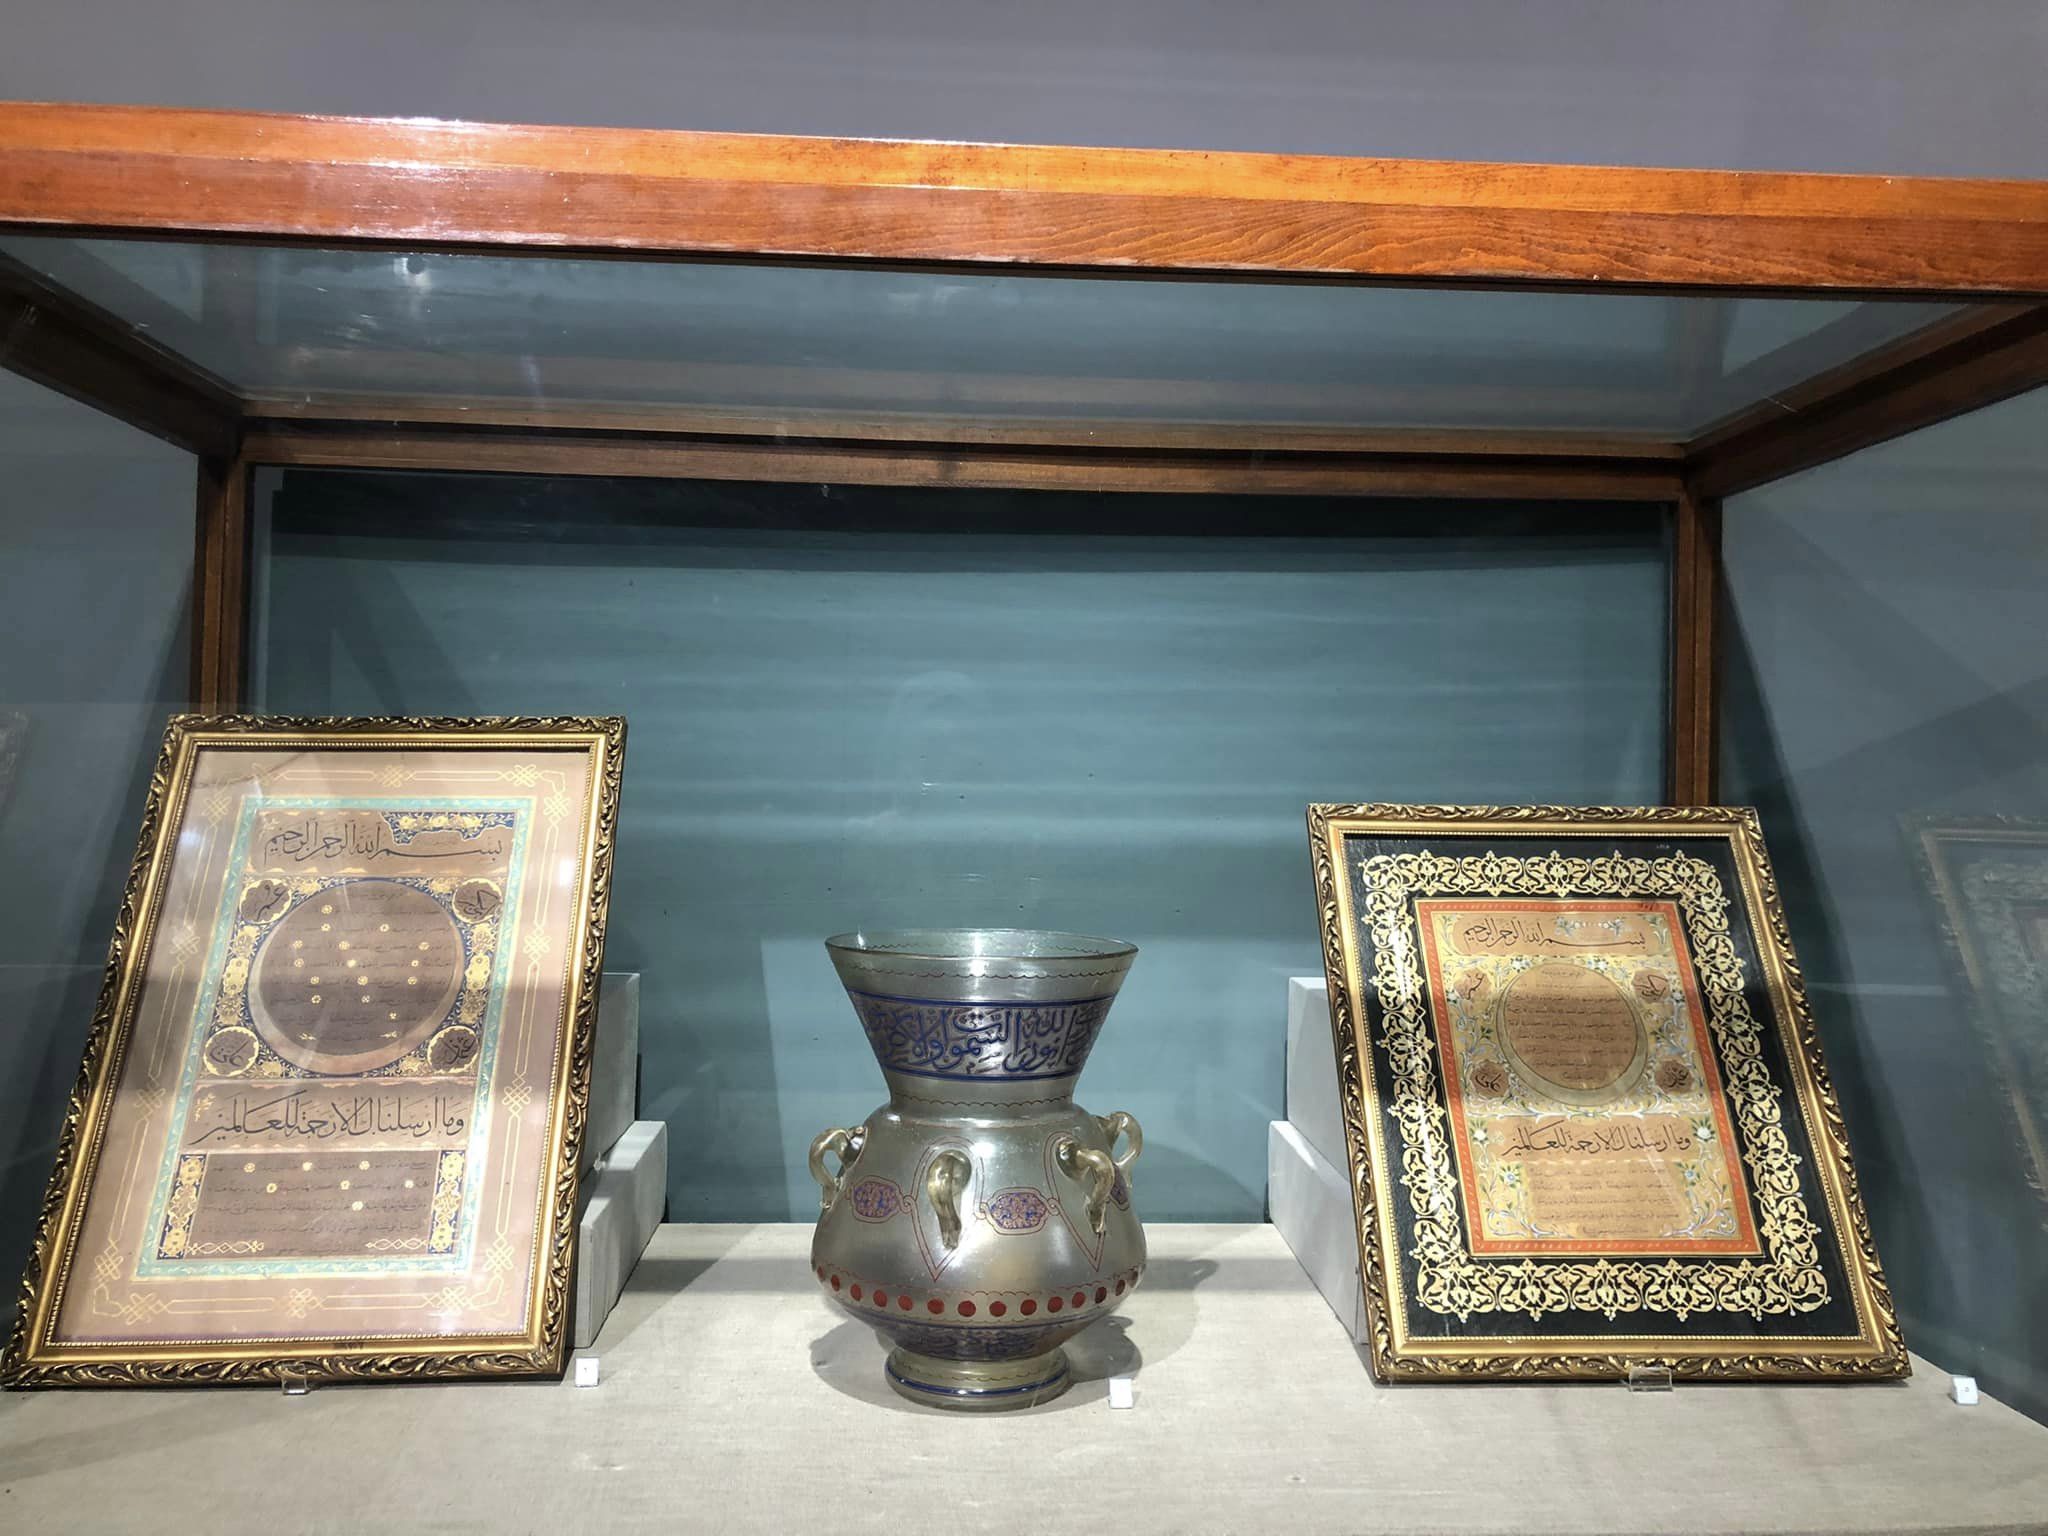 بعض محتويات معرض رمضان بمتحف كفر الشيخ